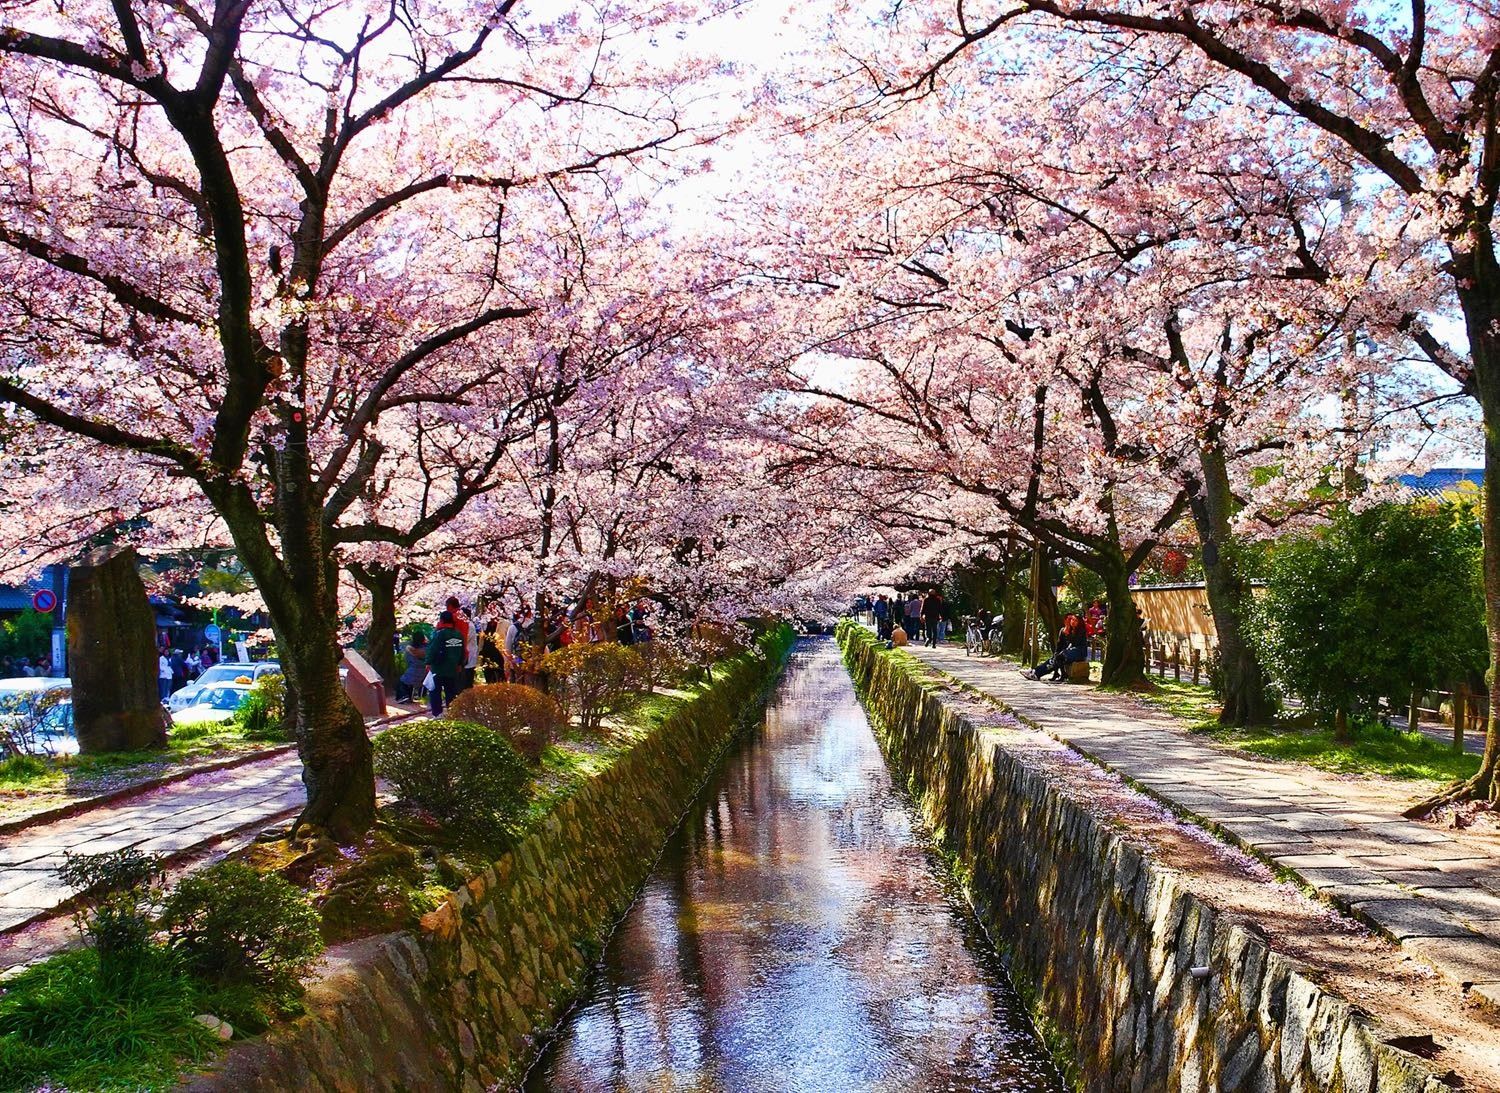 Inilah 5 Spot Terbaik Untuk Nikmati Keindahan Alam Kyoto Di Jepang